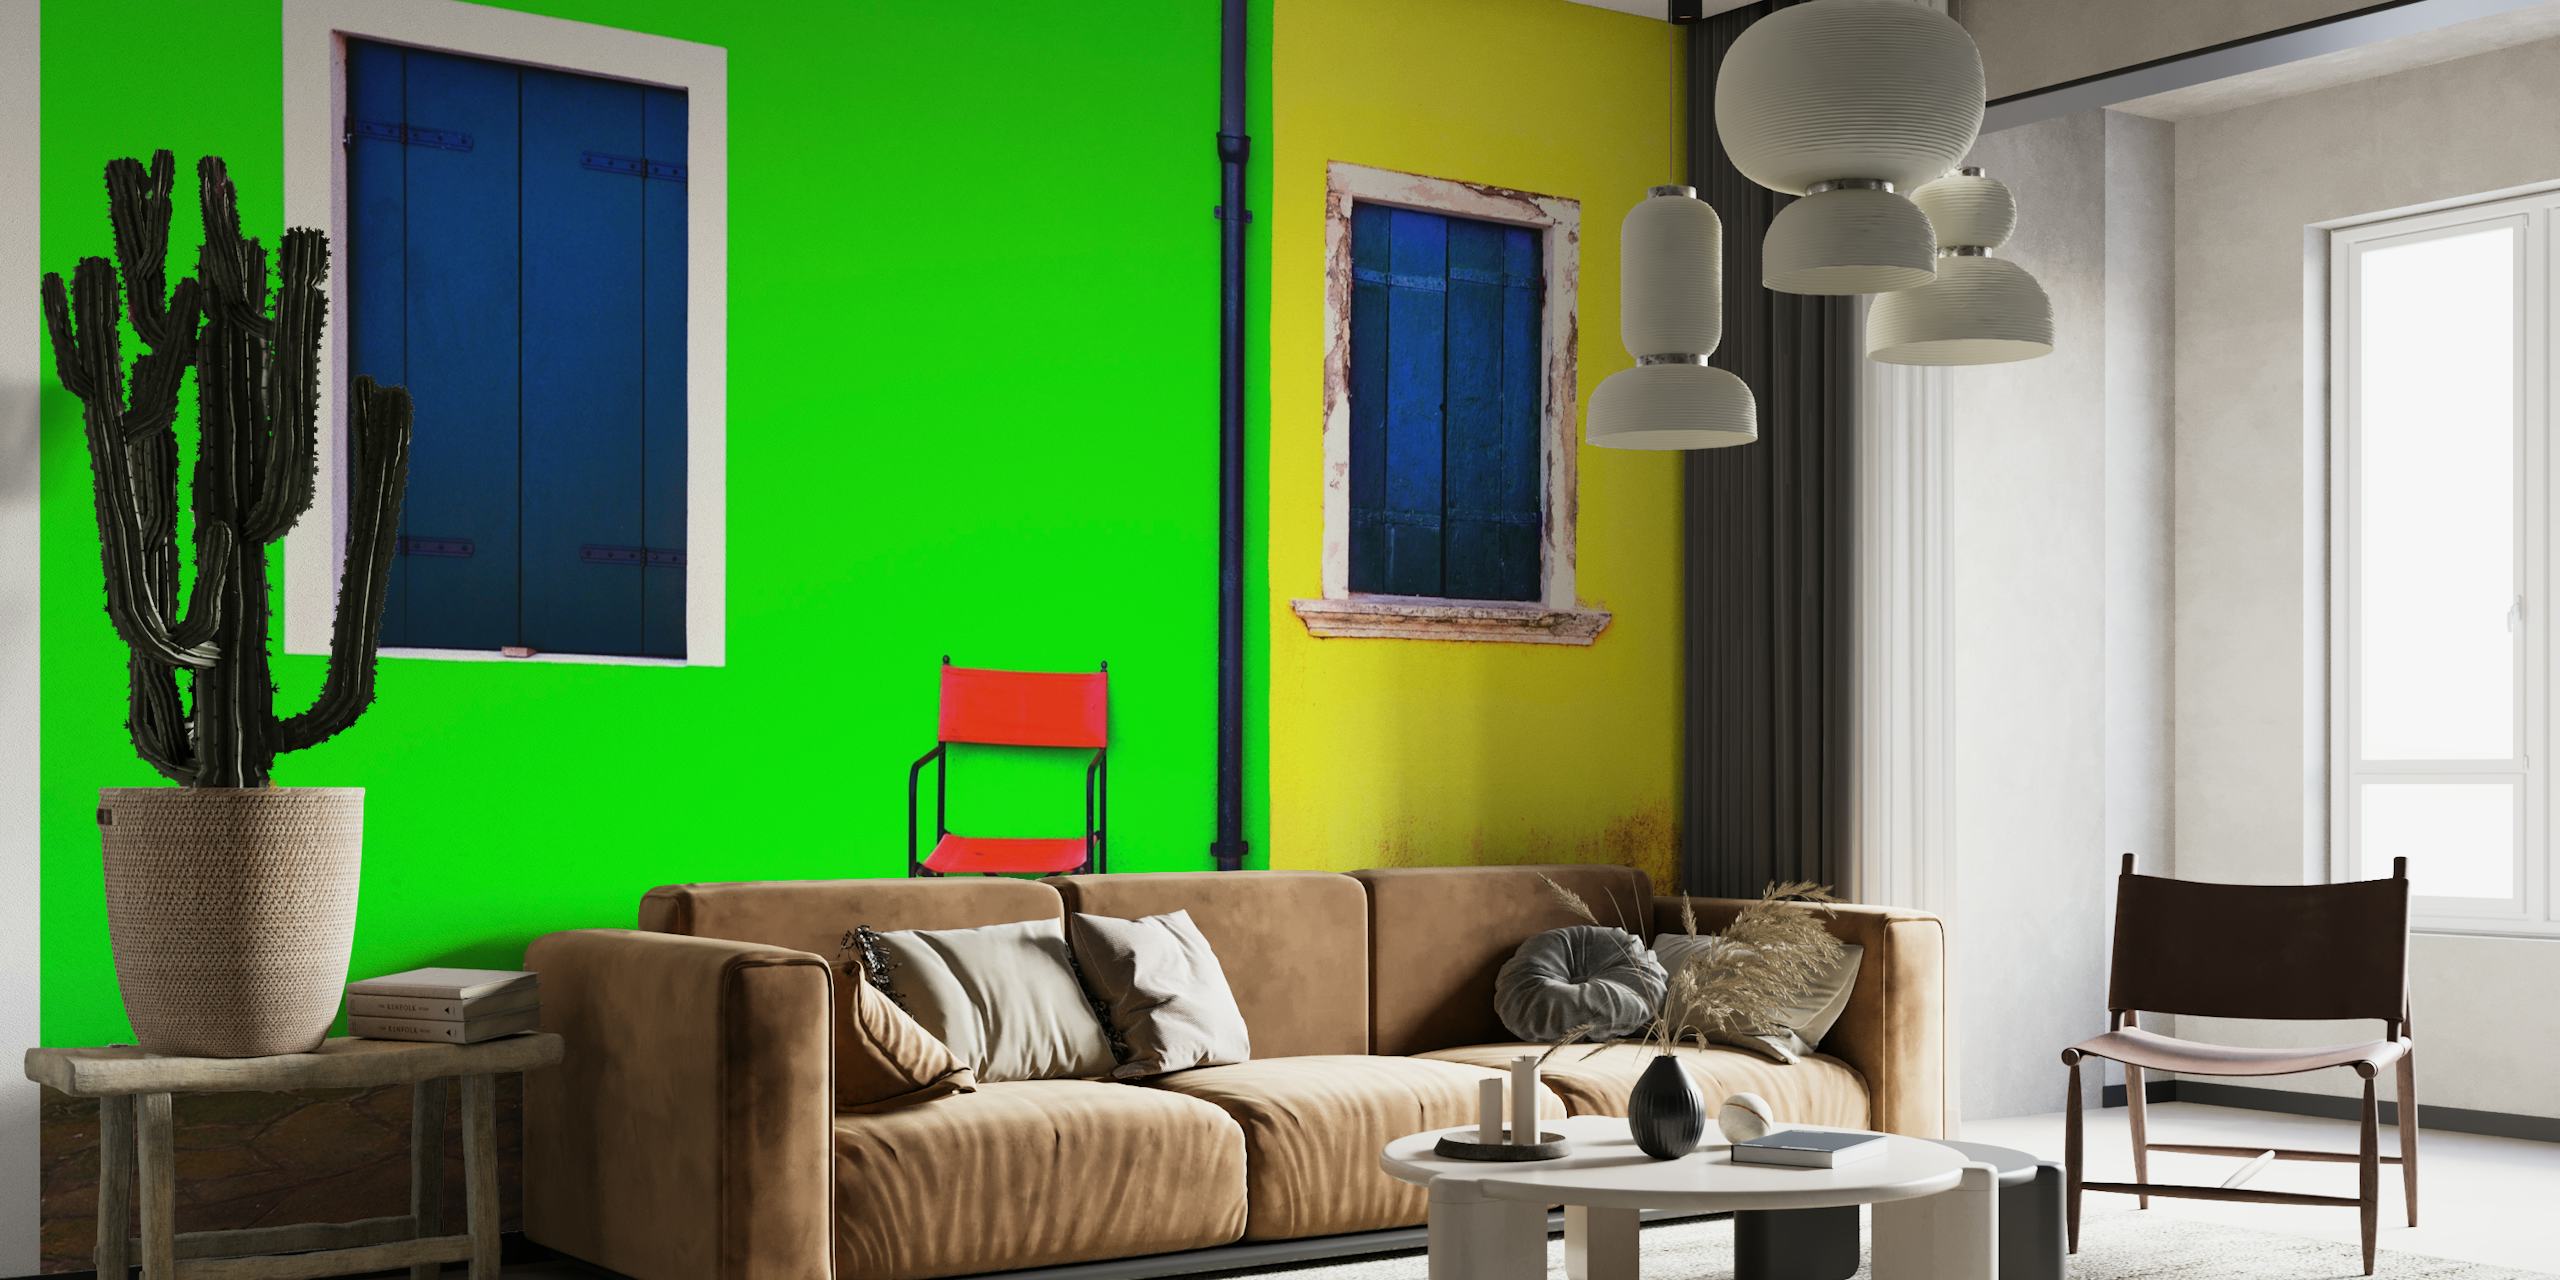 Mural atrevido y minimalista que presenta una pared verde con una ventana azul, una pared amarilla con una ventana azul y una silla roja.